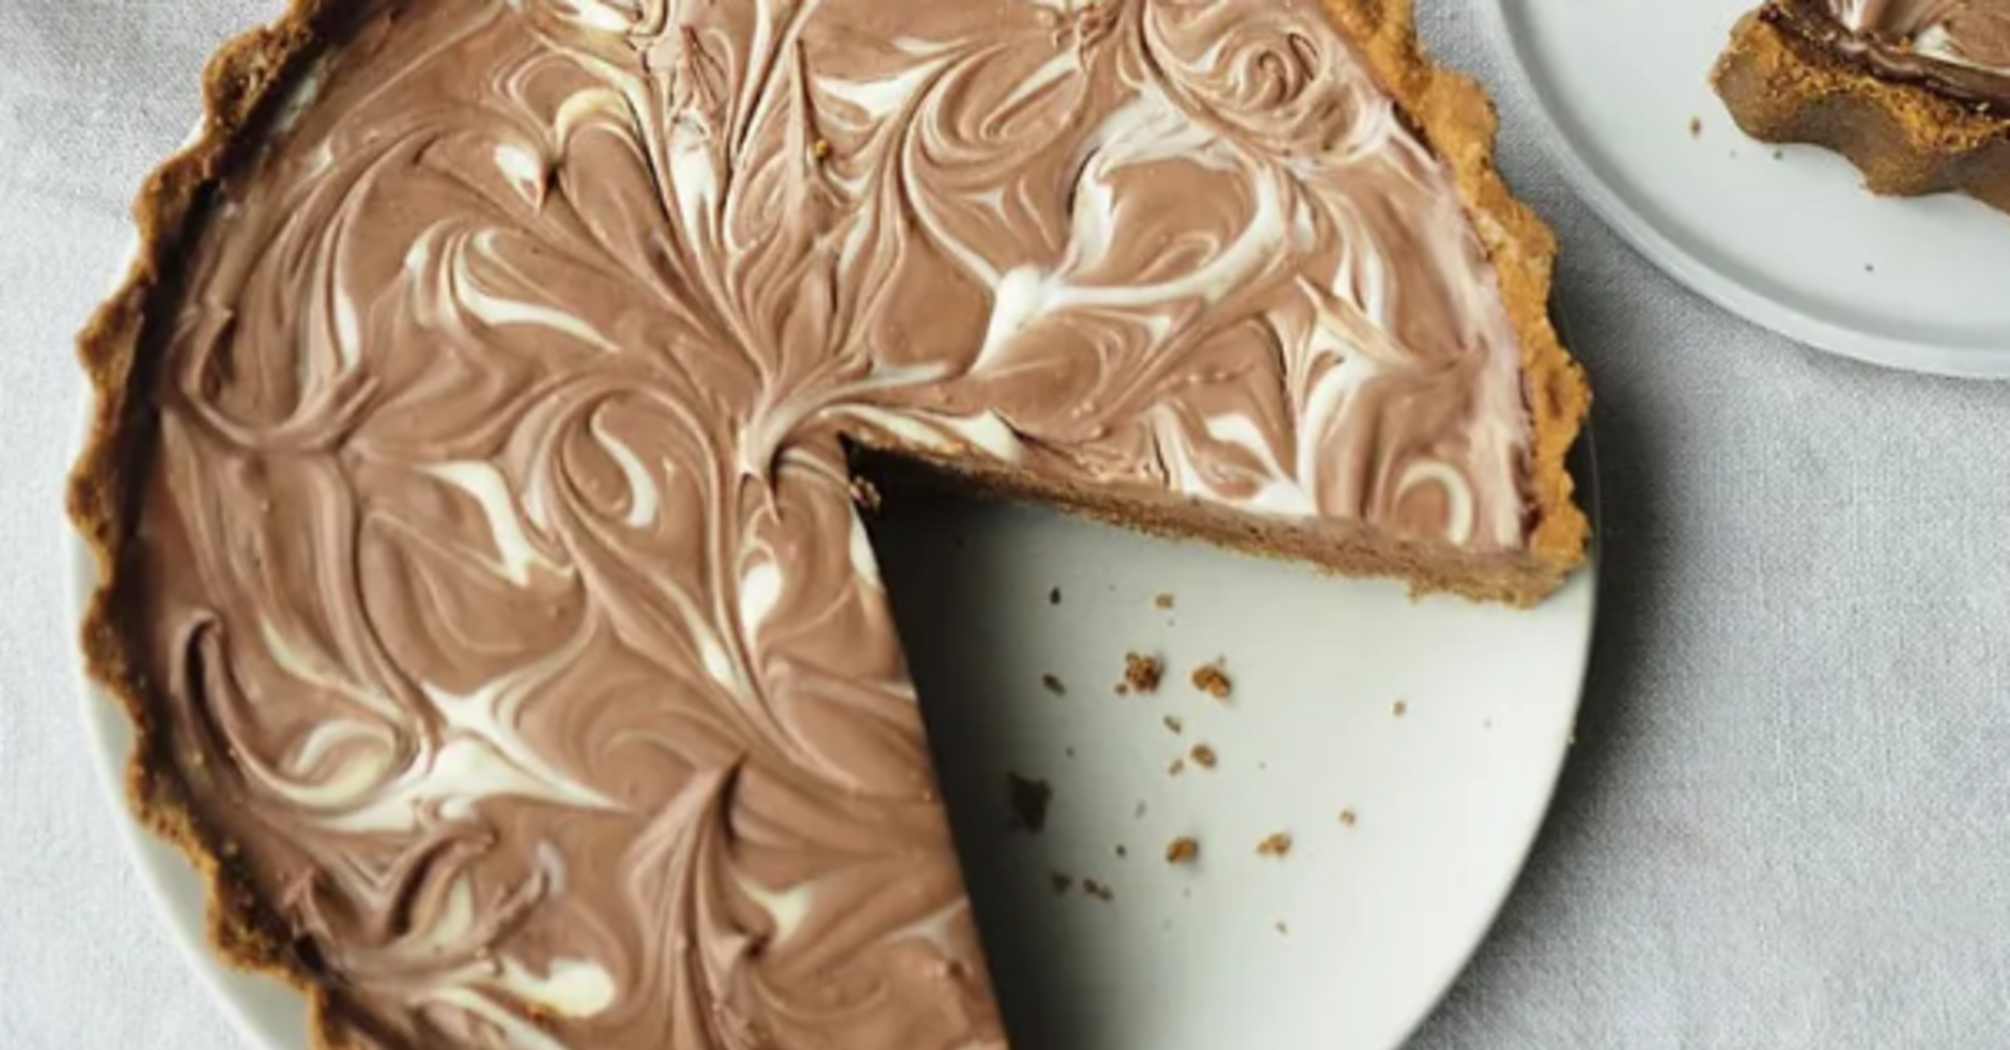 Порадуйте себе та близьких на Великдень: Джеймі Олівер поділився рецептом неповторного шоколадного чизкейку